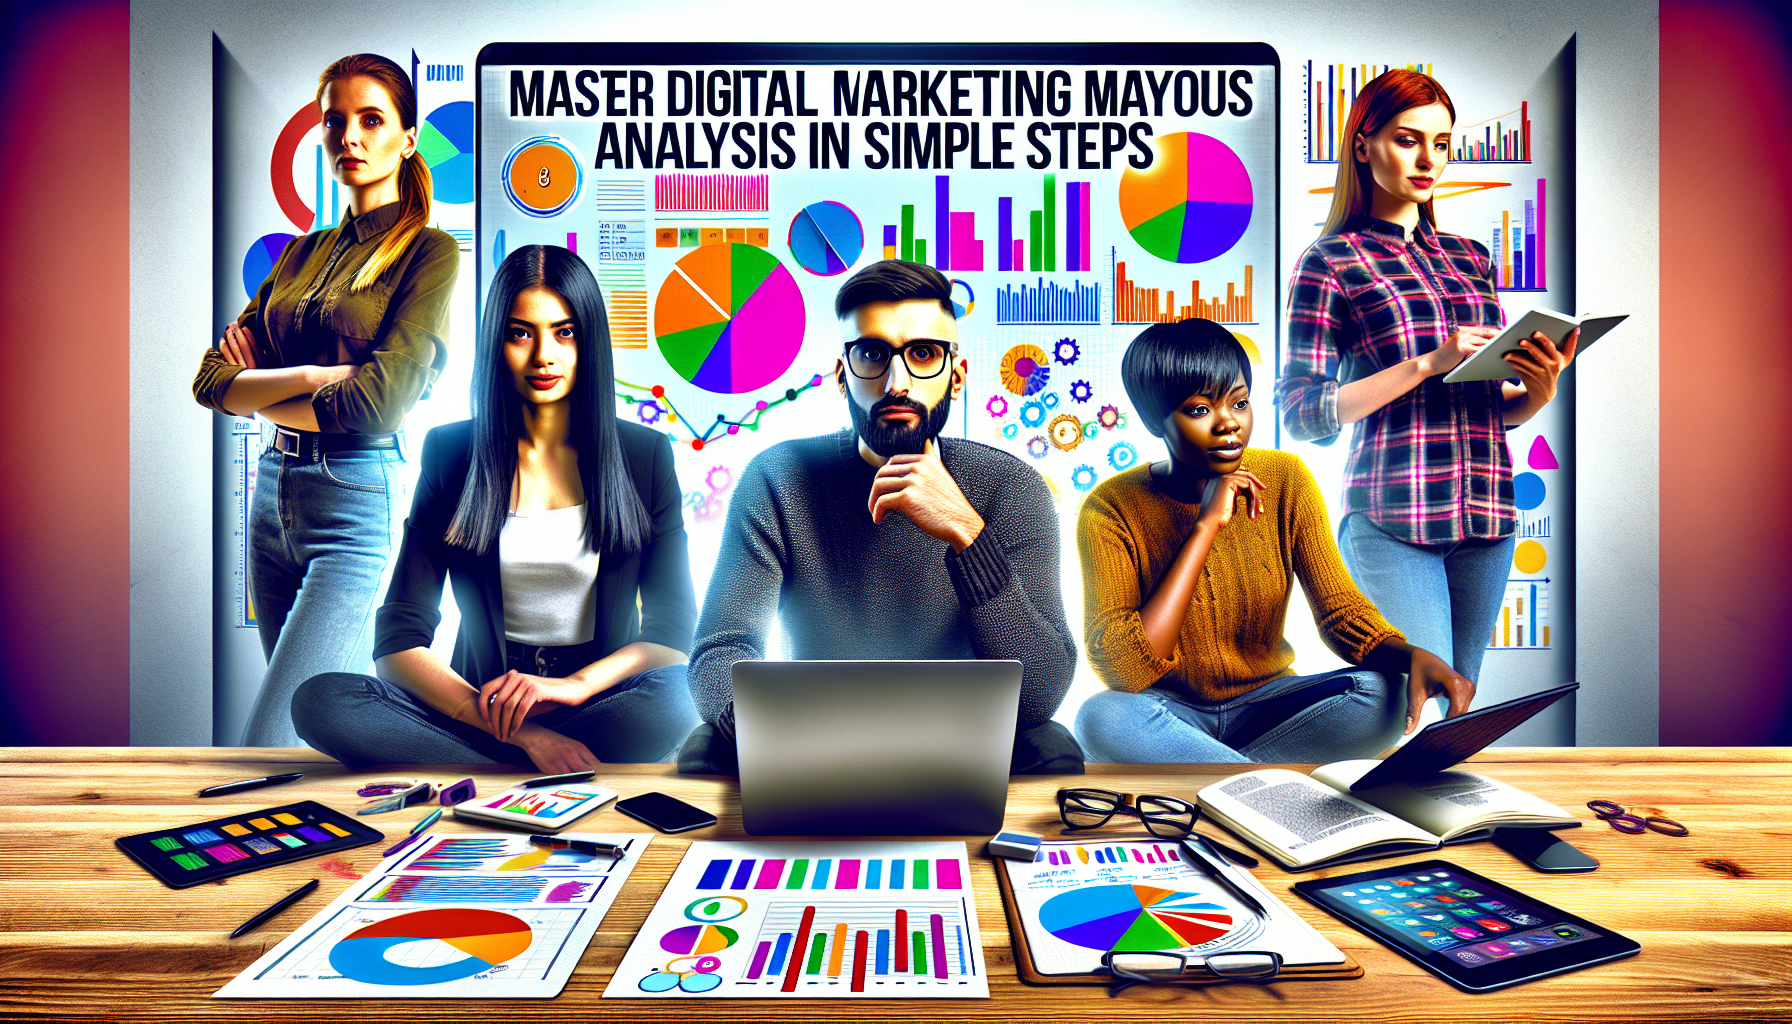 découvrez comment maîtriser l'analyse et la mesure en marketing digital avec notre formation en marketing digital. apprenez à interpréter les données et à évaluer l'efficacité de vos stratégies pour optimiser vos campagnes.